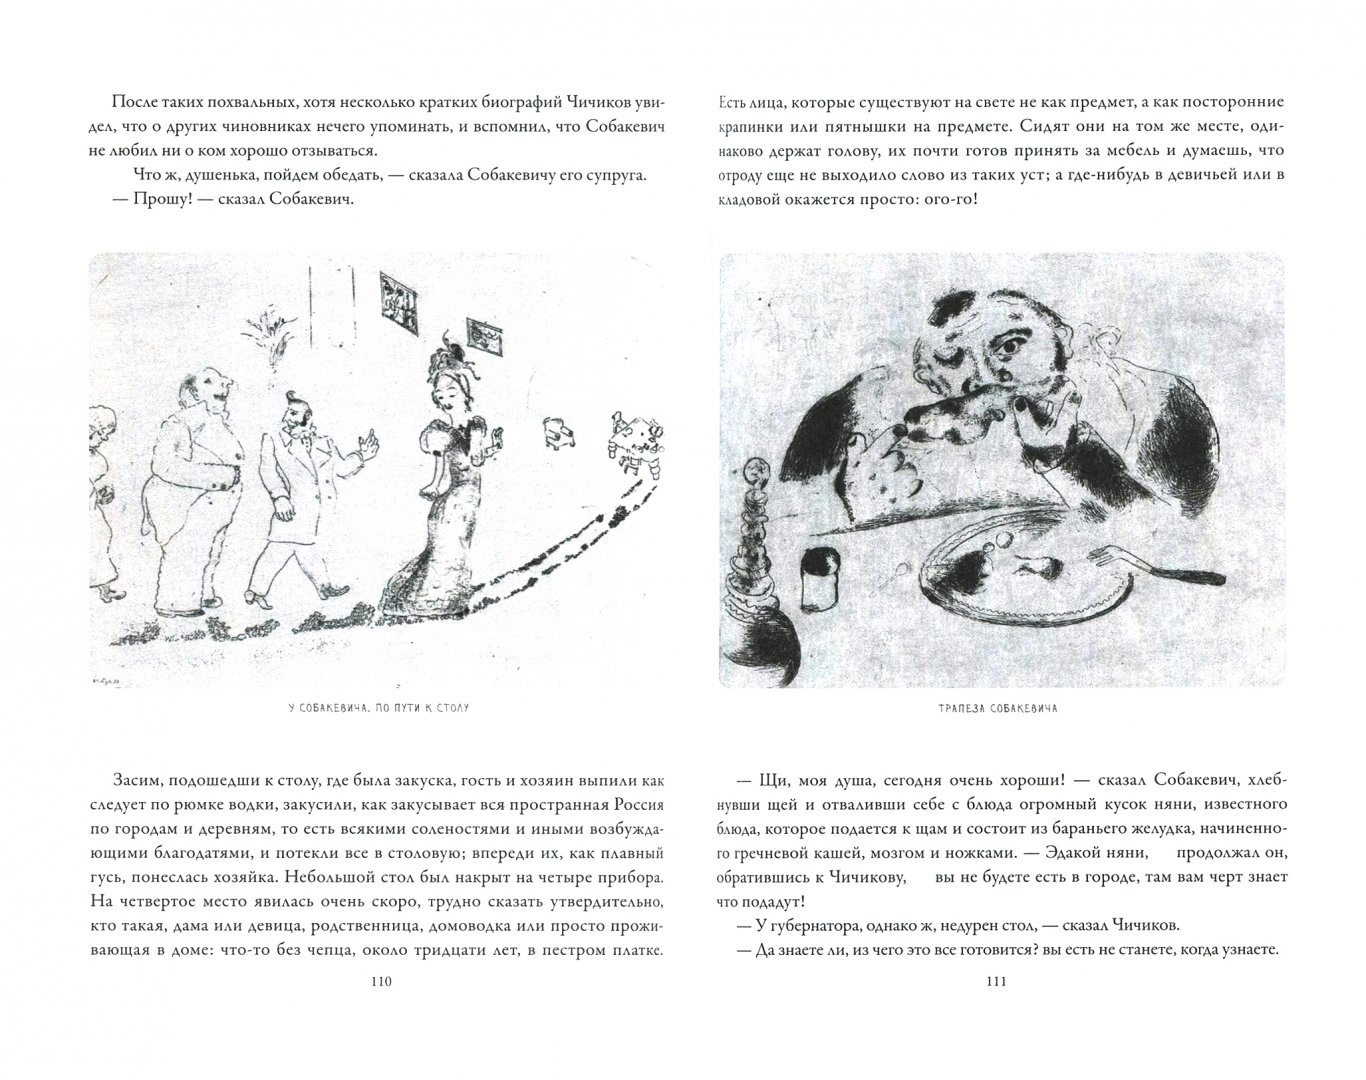 Иллюстрация 1 из 11 для Мертвые души с иллюстрациями Марка Шагала - Николай Гоголь | Лабиринт - книги. Источник: Лабиринт